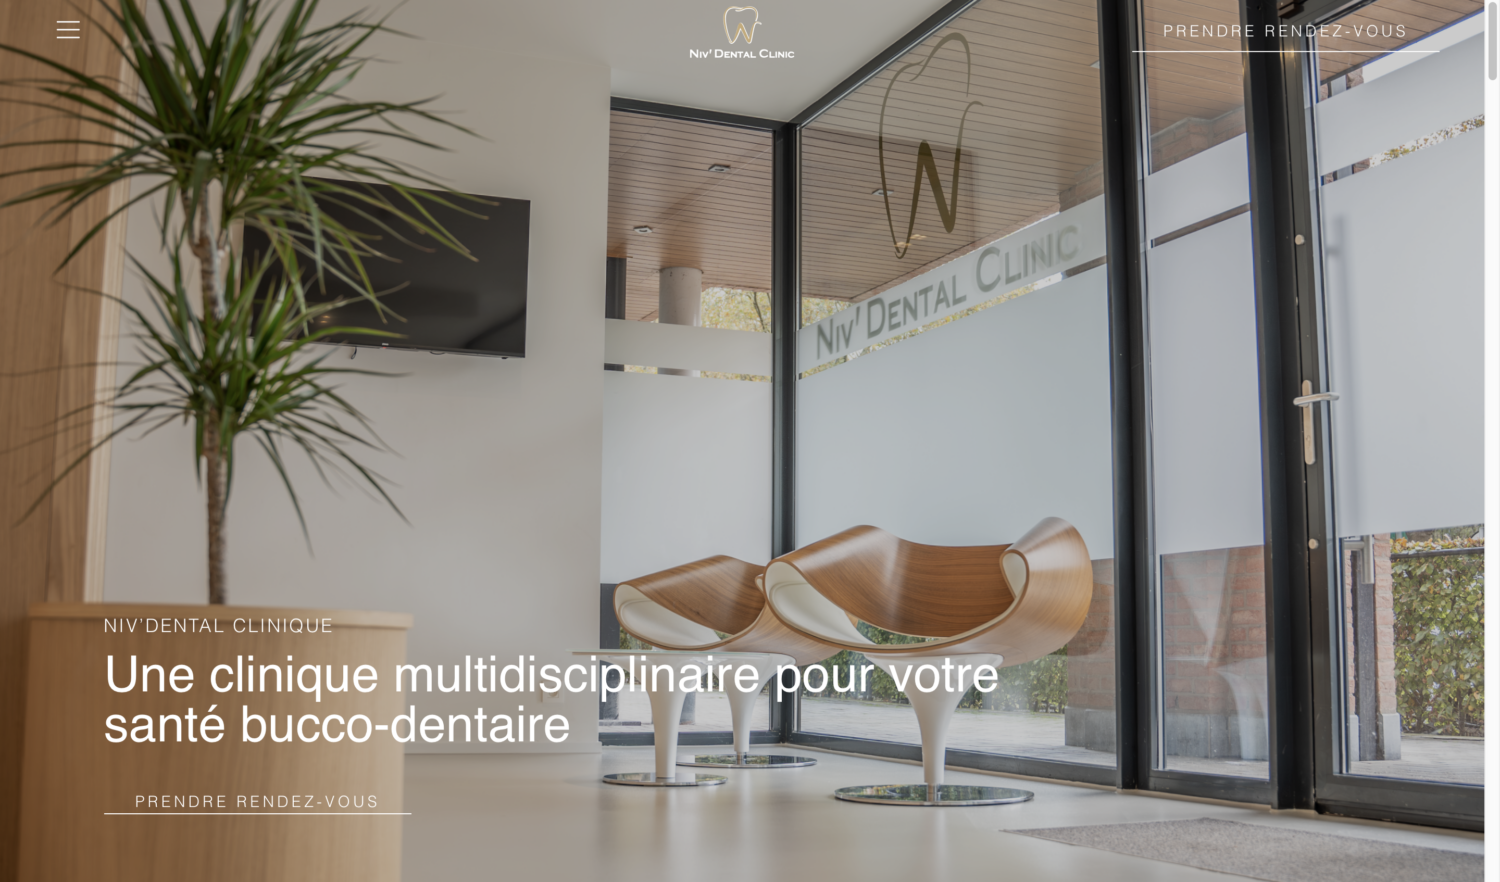 Design et développement d'un site web vitrine - ANGELIQUE DAMOUR Design Studio - Niv'Dental Clinique - bannière principale